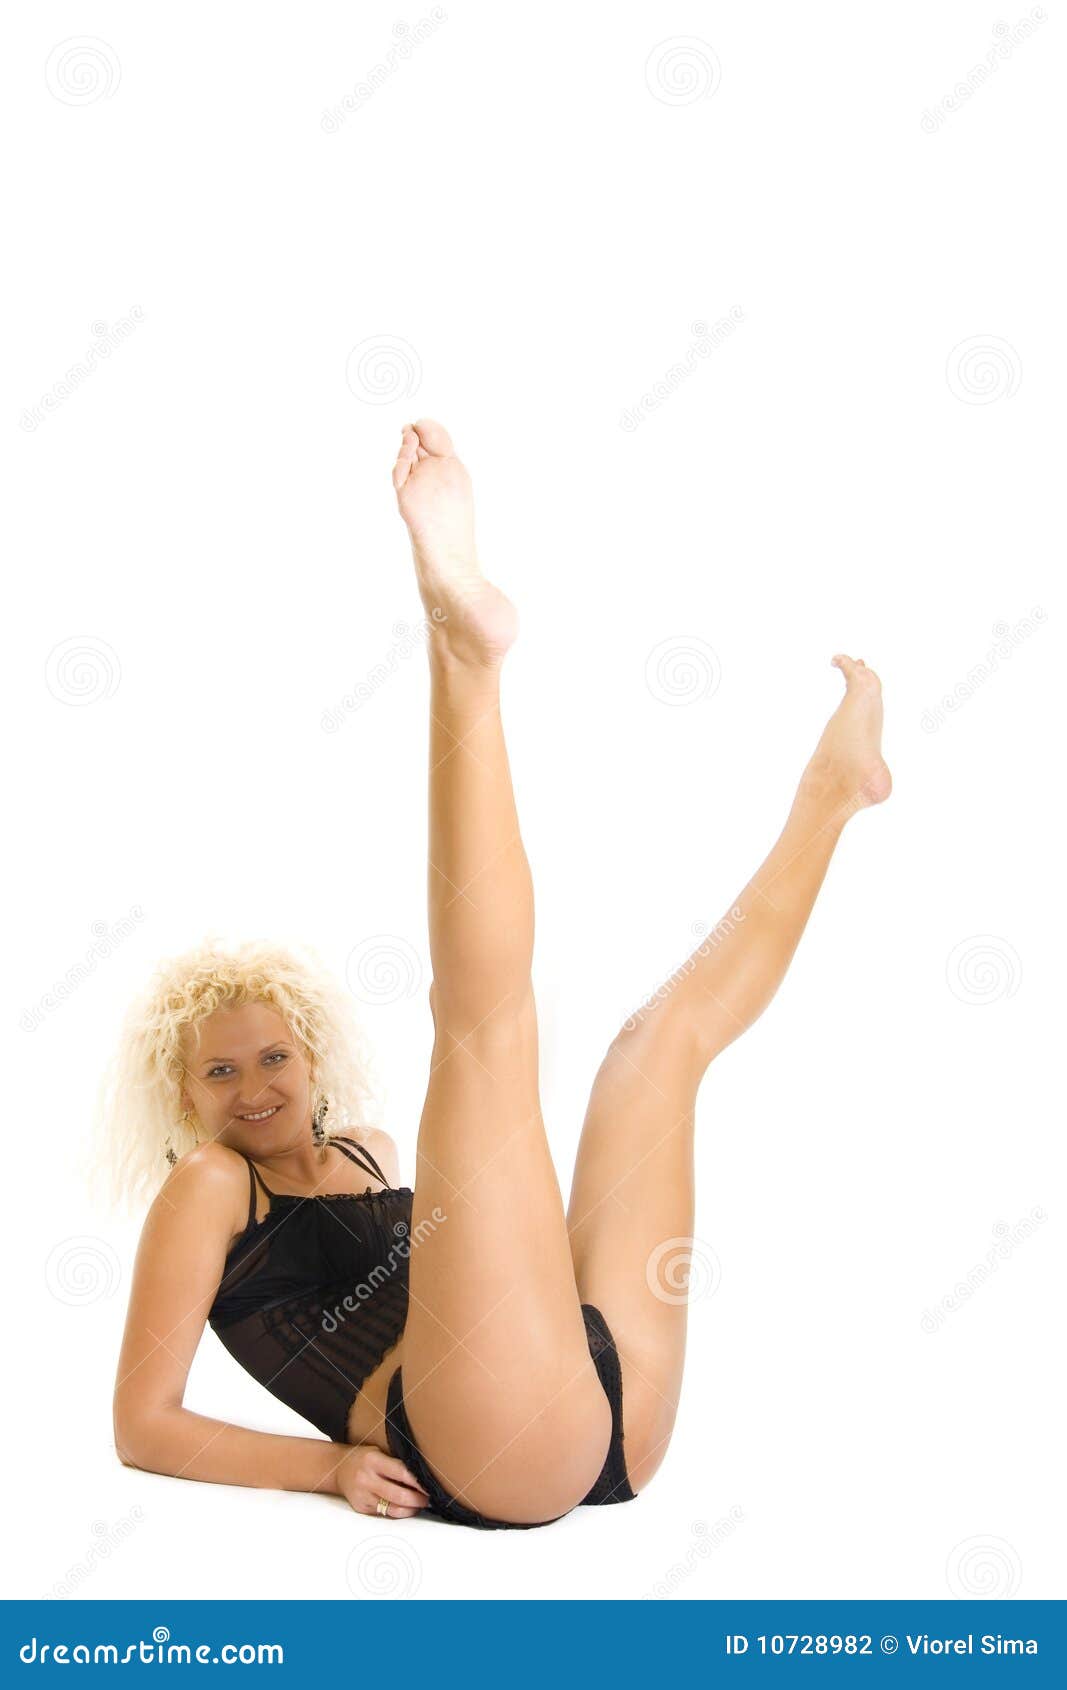 arlene yabot recommends Blonde Spread Legs